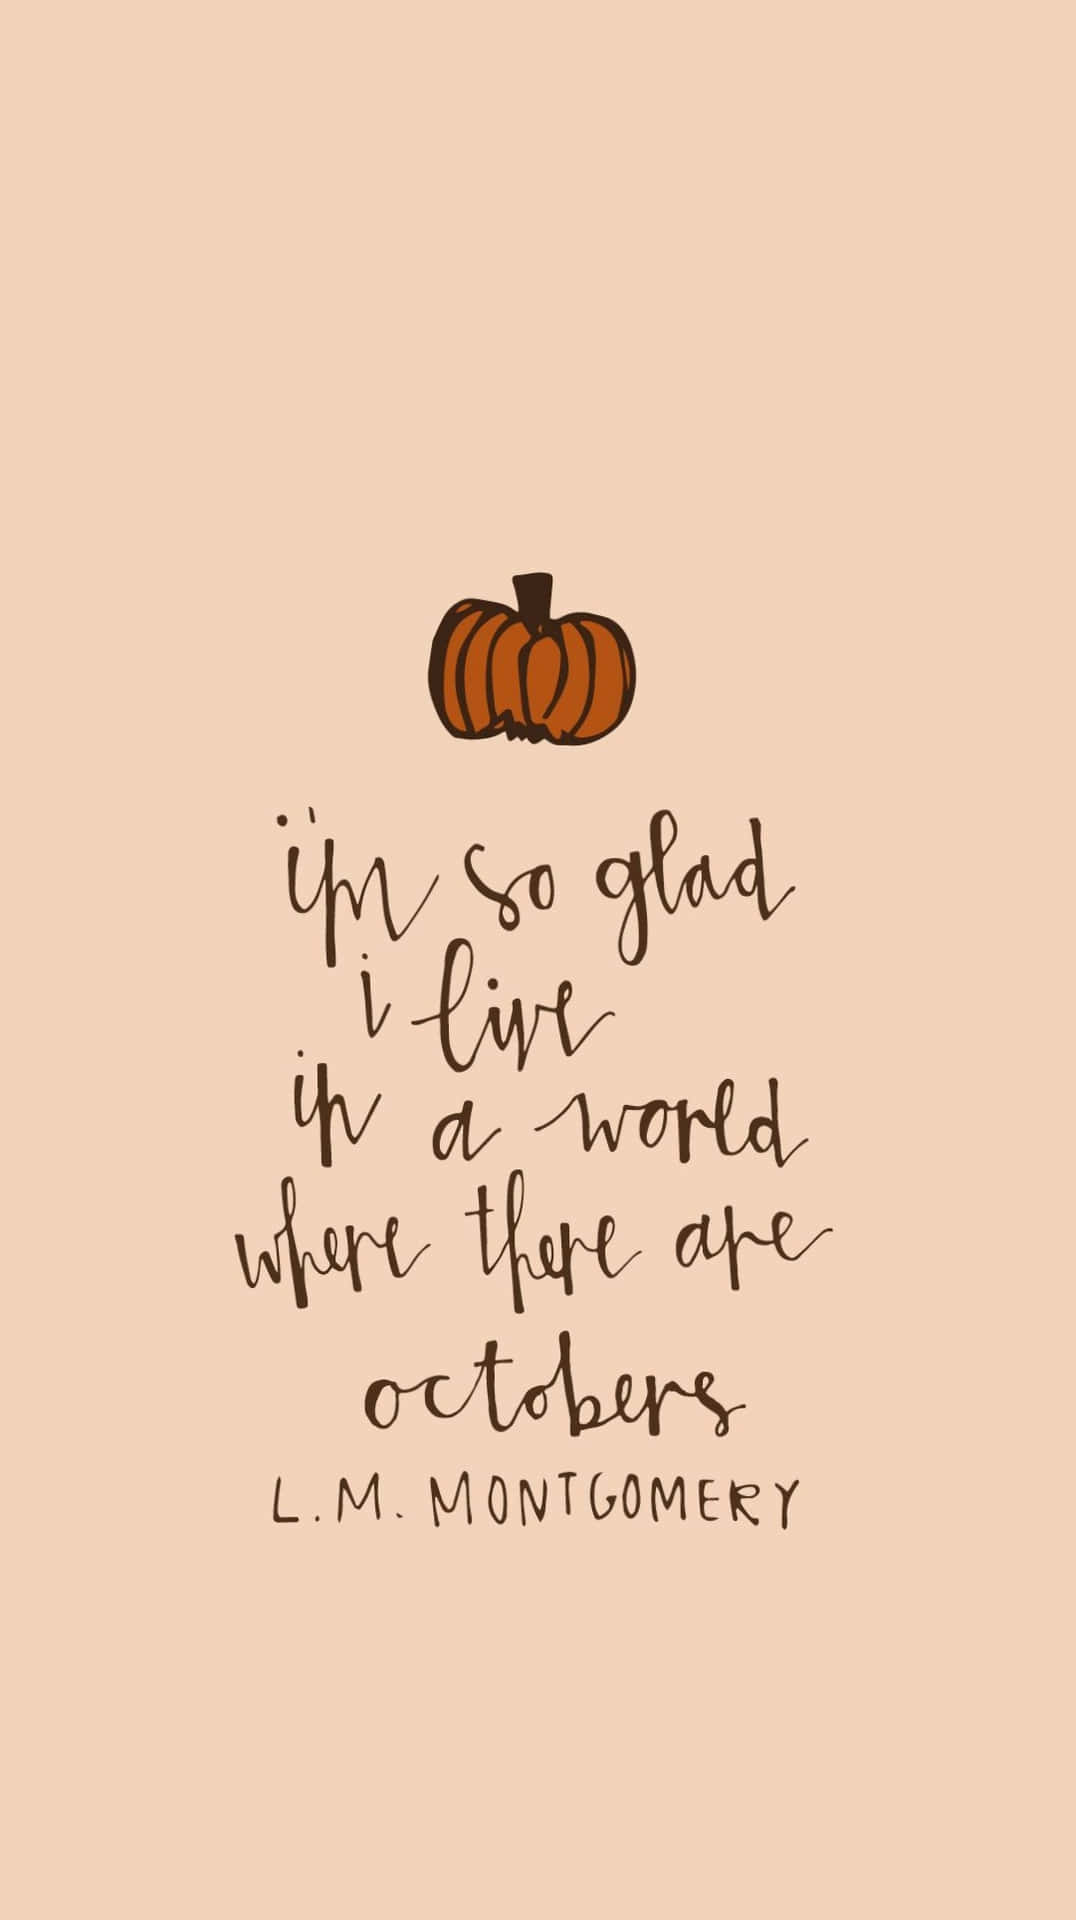 Oktober æstetisk taknemmelig citat baggrundsbillede: Wallpaper